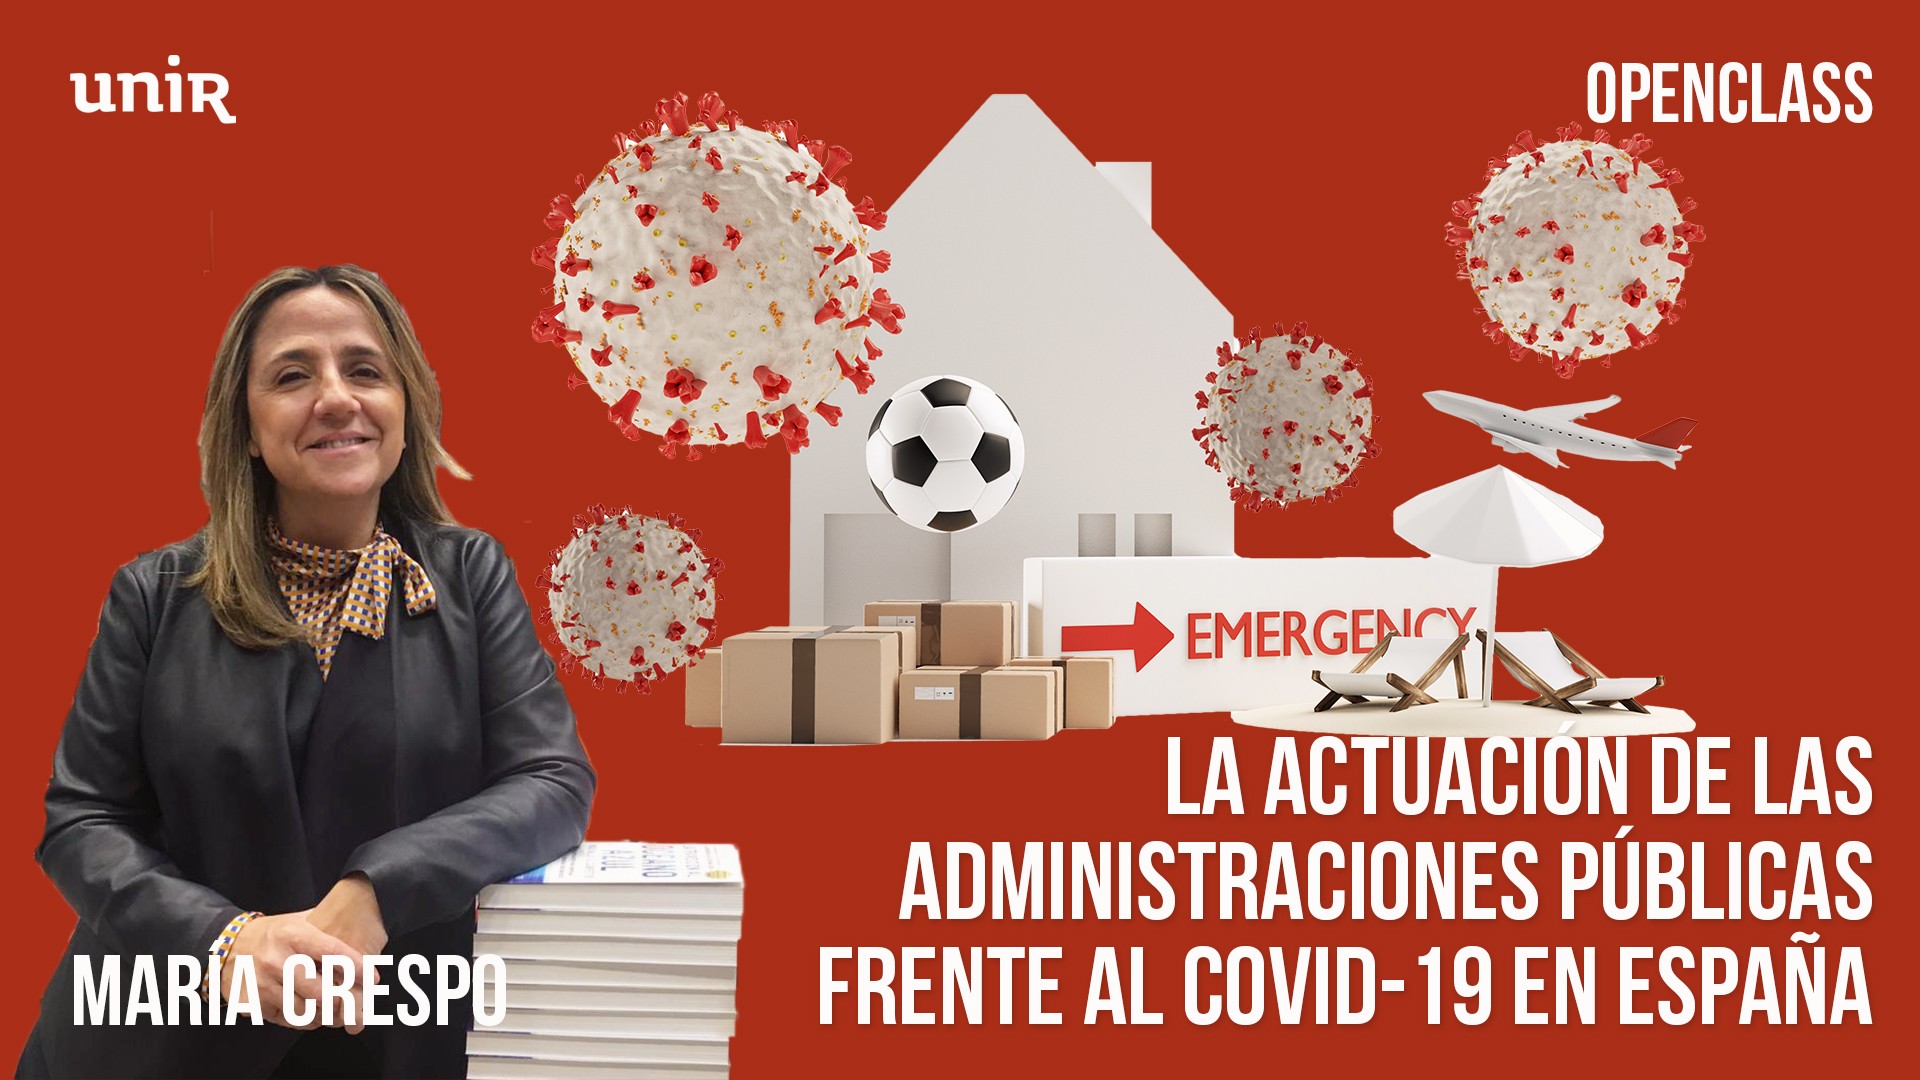 La actuación de las administraciones públicas frente al COVID-19 en España